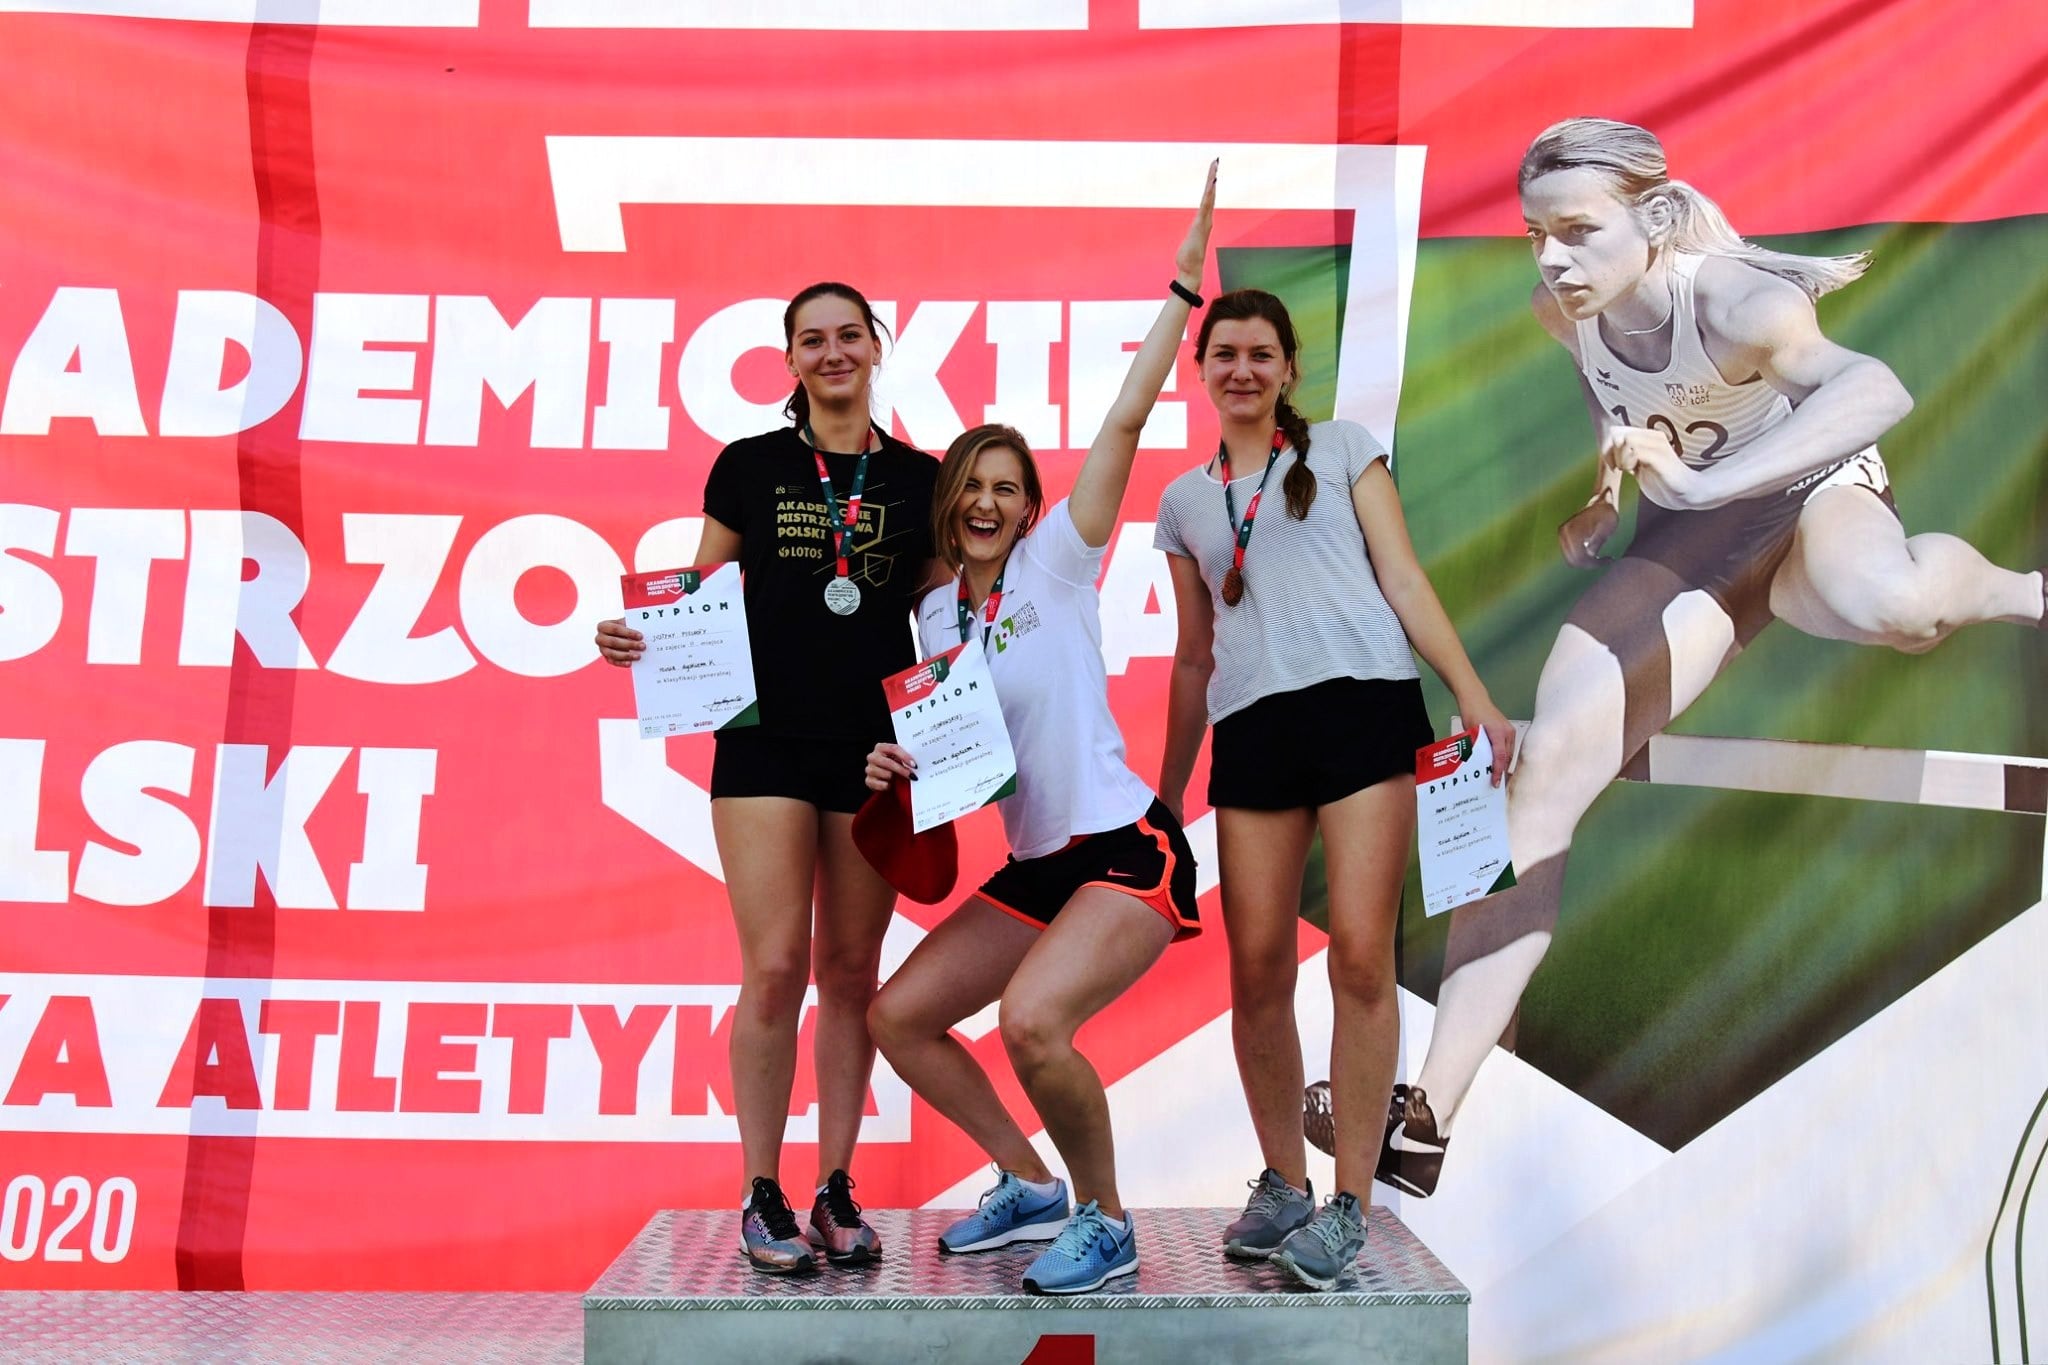 Akademickie Mistrzostwa Polski w lekkiej atletyce